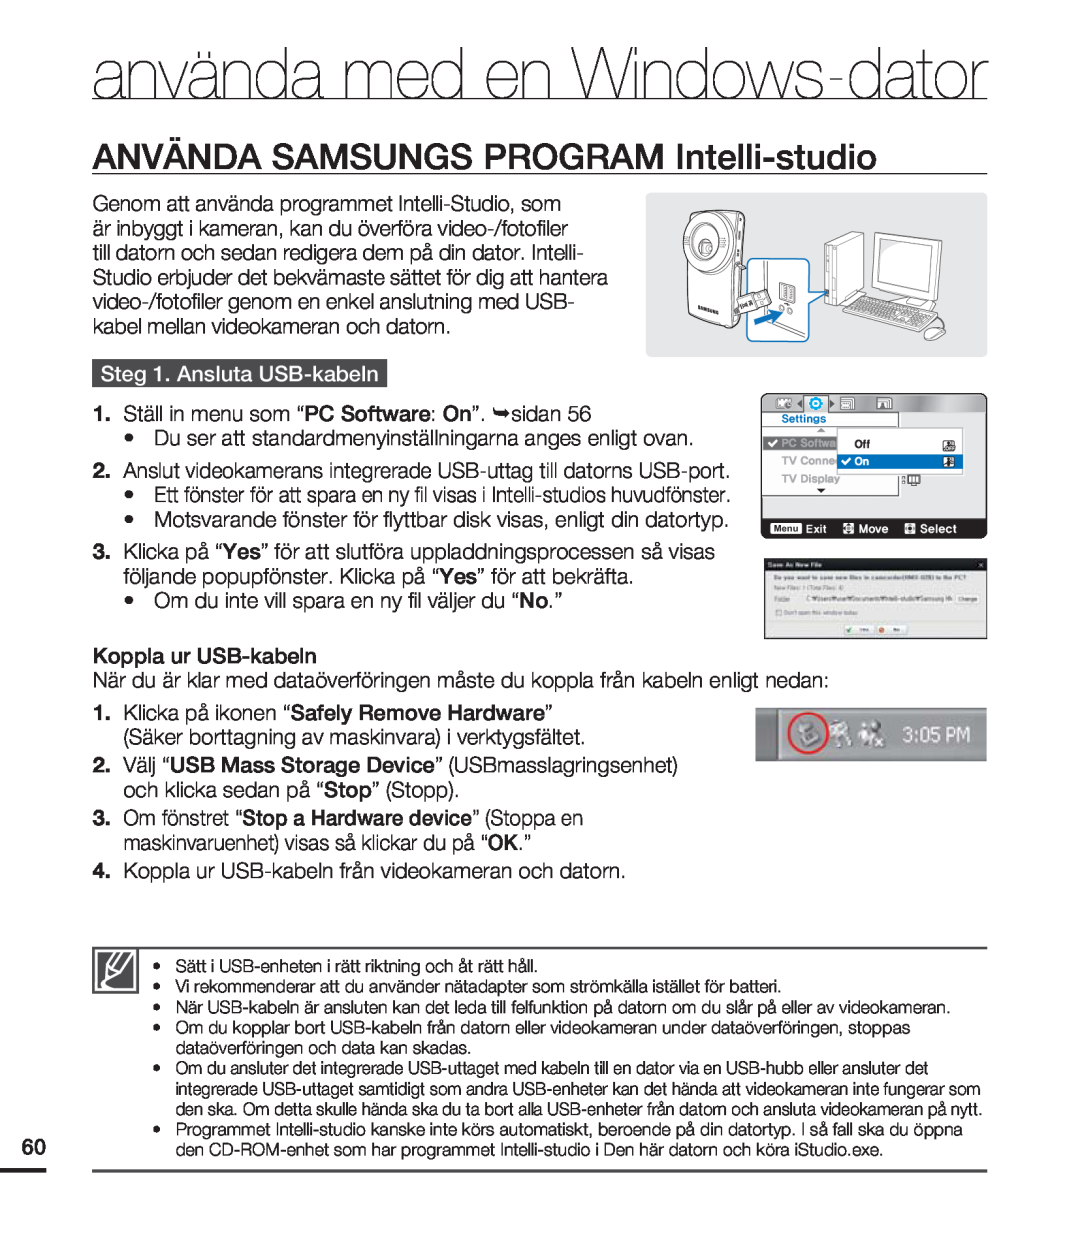 Samsung HMX-U20BP/EDC ANVÄNDA SAMSUNGS PROGRAM Intelli-studio, Steg 1. Ansluta USB-kabeln, använda med en Windows-dator 